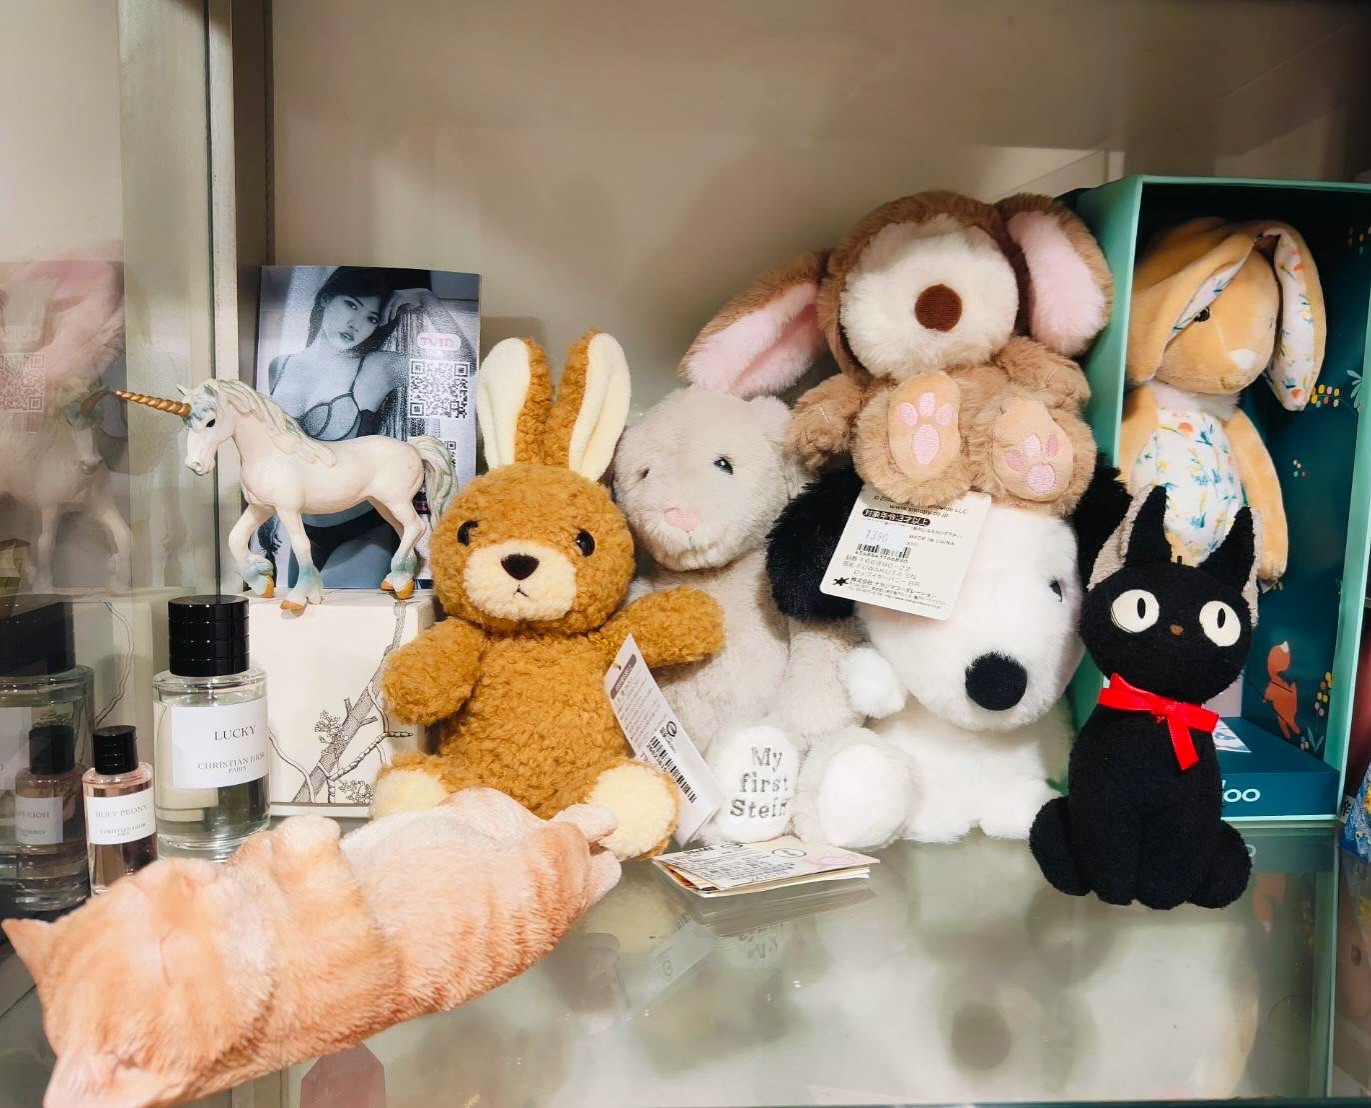 我很愛兔子🐰娃娃
因為（代表溫柔）
哈哈再來史奴比/貓
左邊上👈🏻我的寫真照